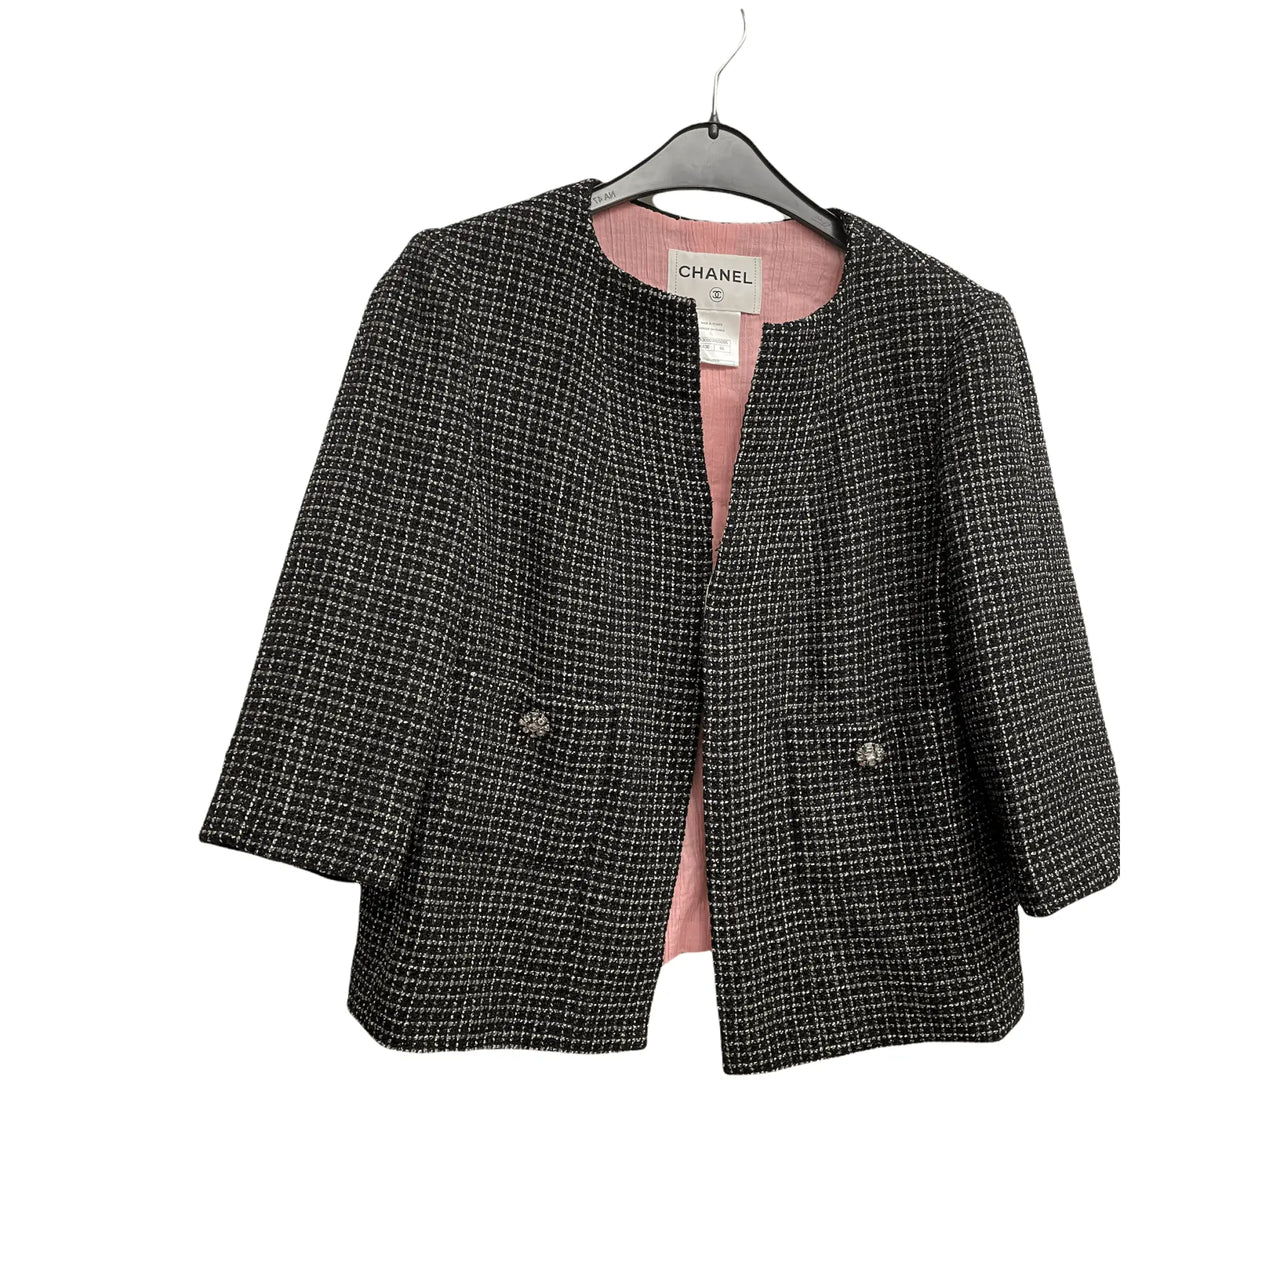 Chanel - Authenticated La Petite Veste Noire Jacket - Tweed Black Plain for Women, Very Good Condition